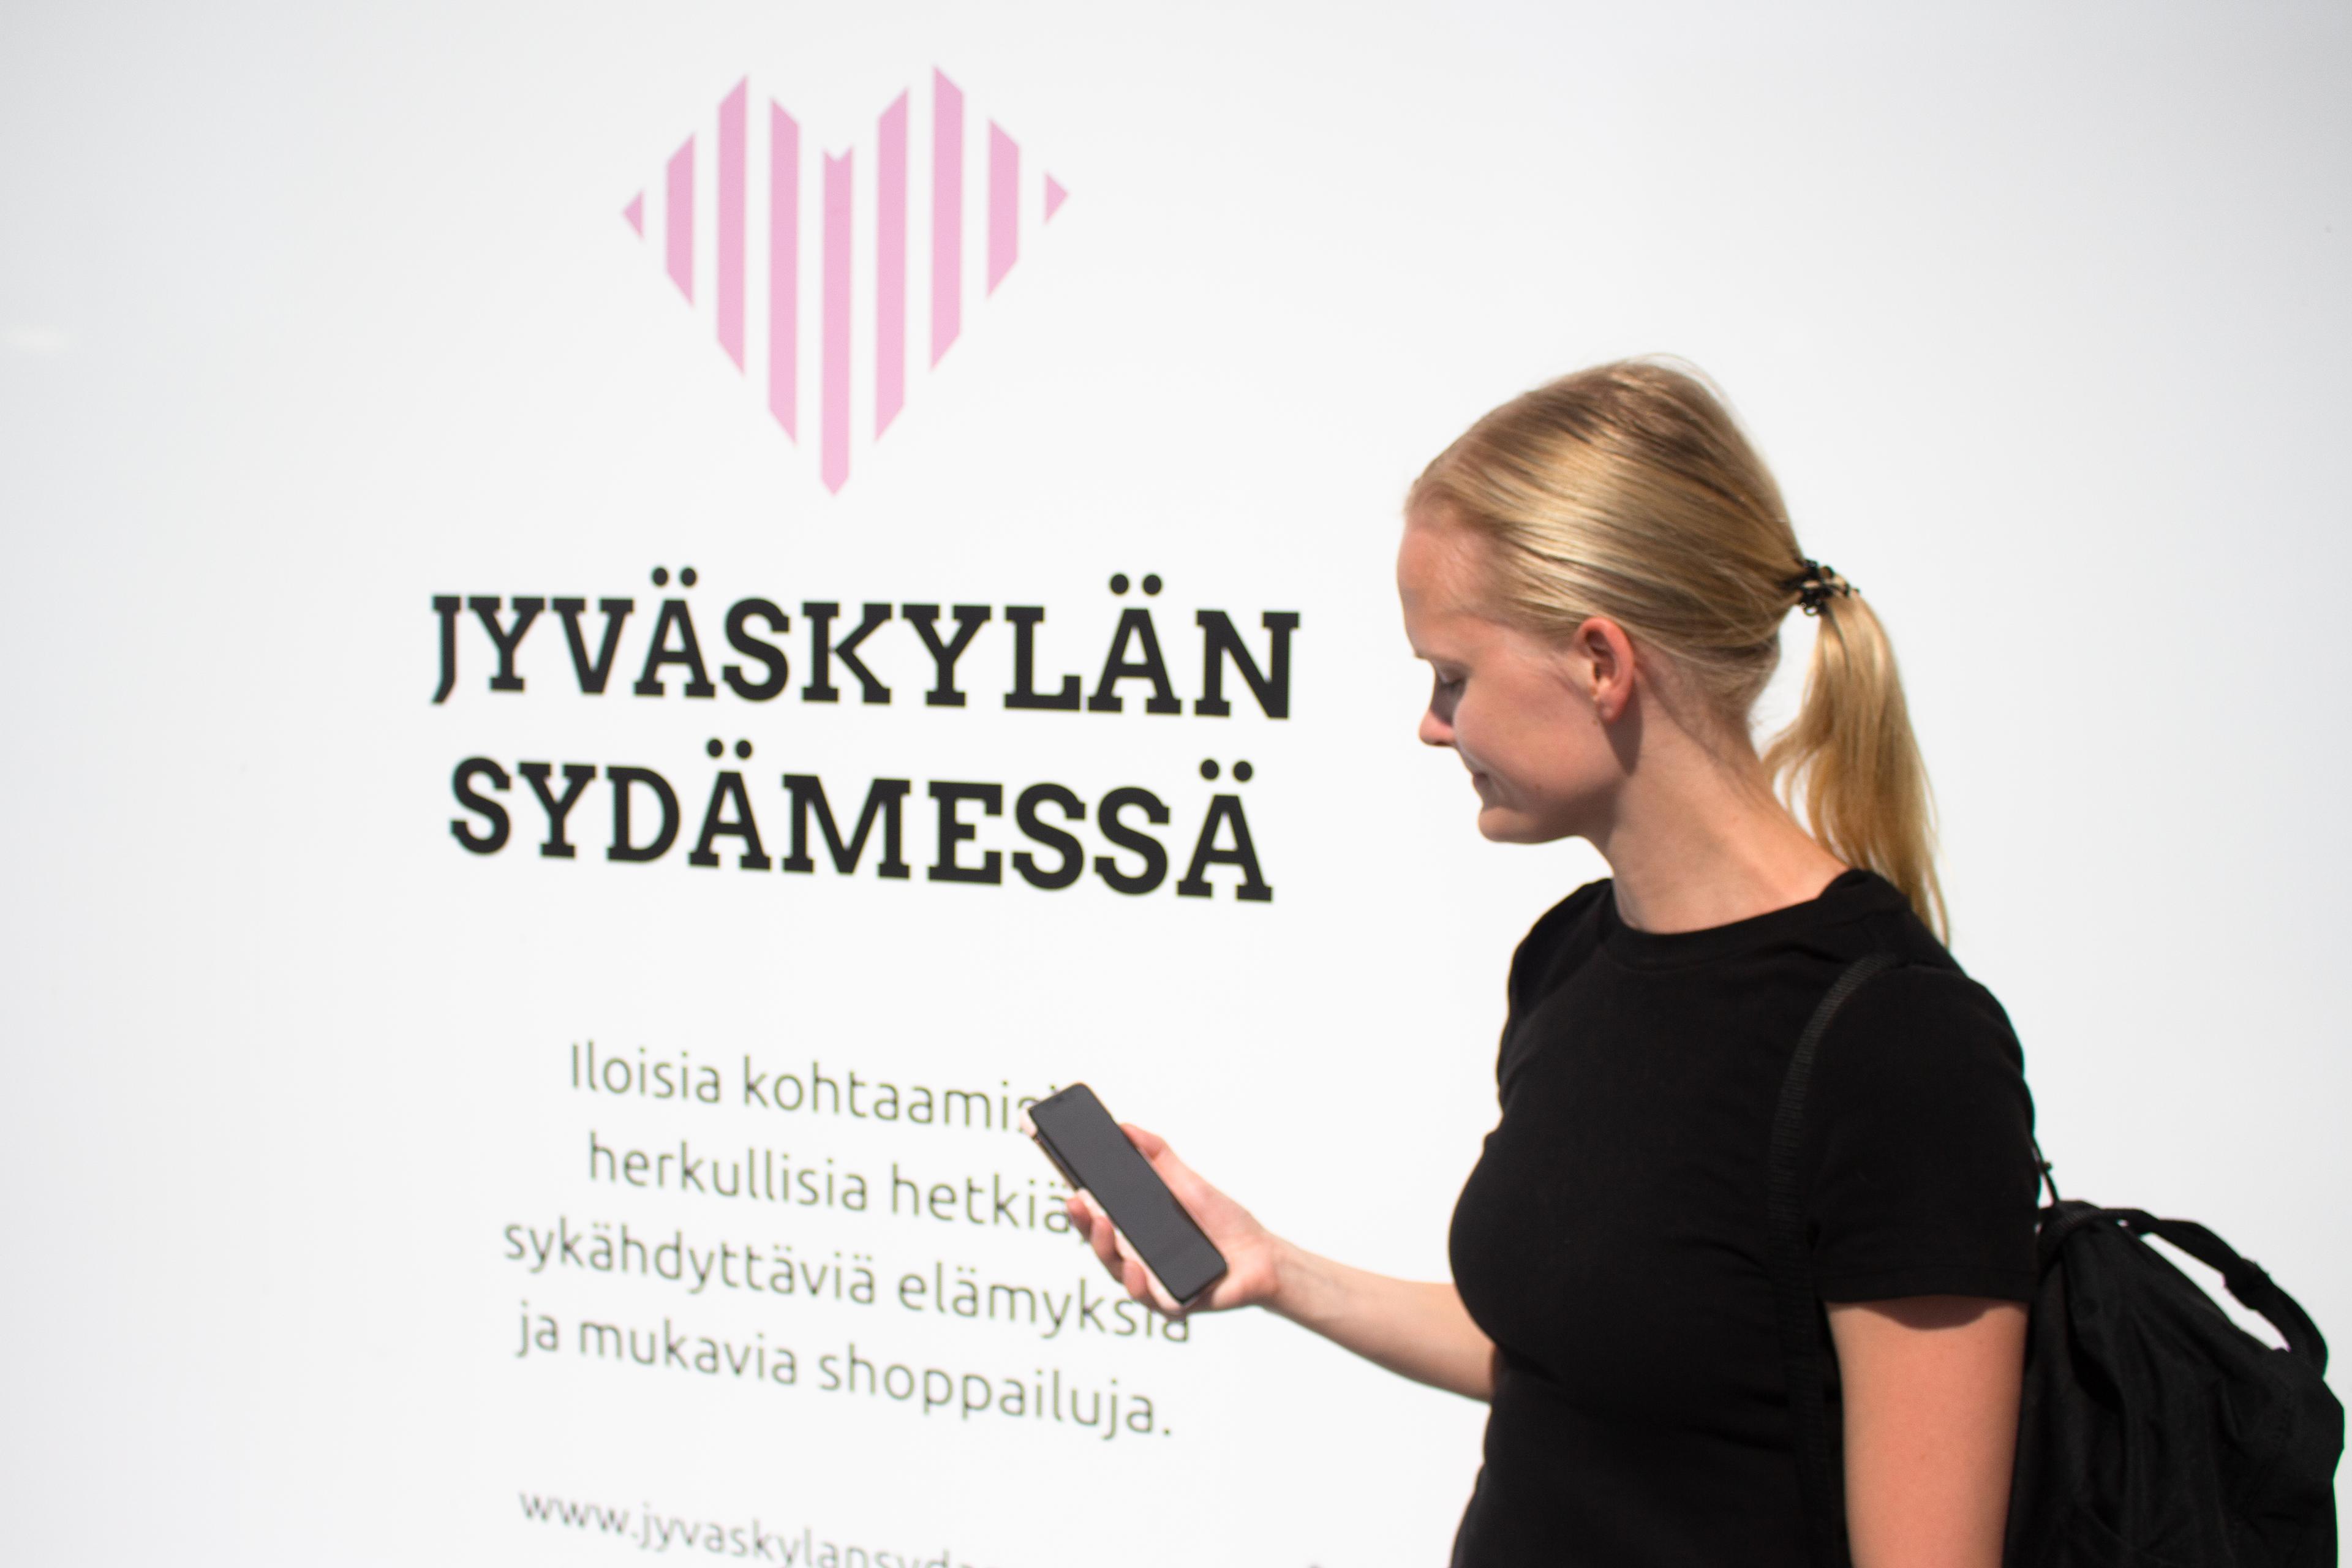 Shareway palvelu edistää Jyväskylän kaupungin keskustavisiota